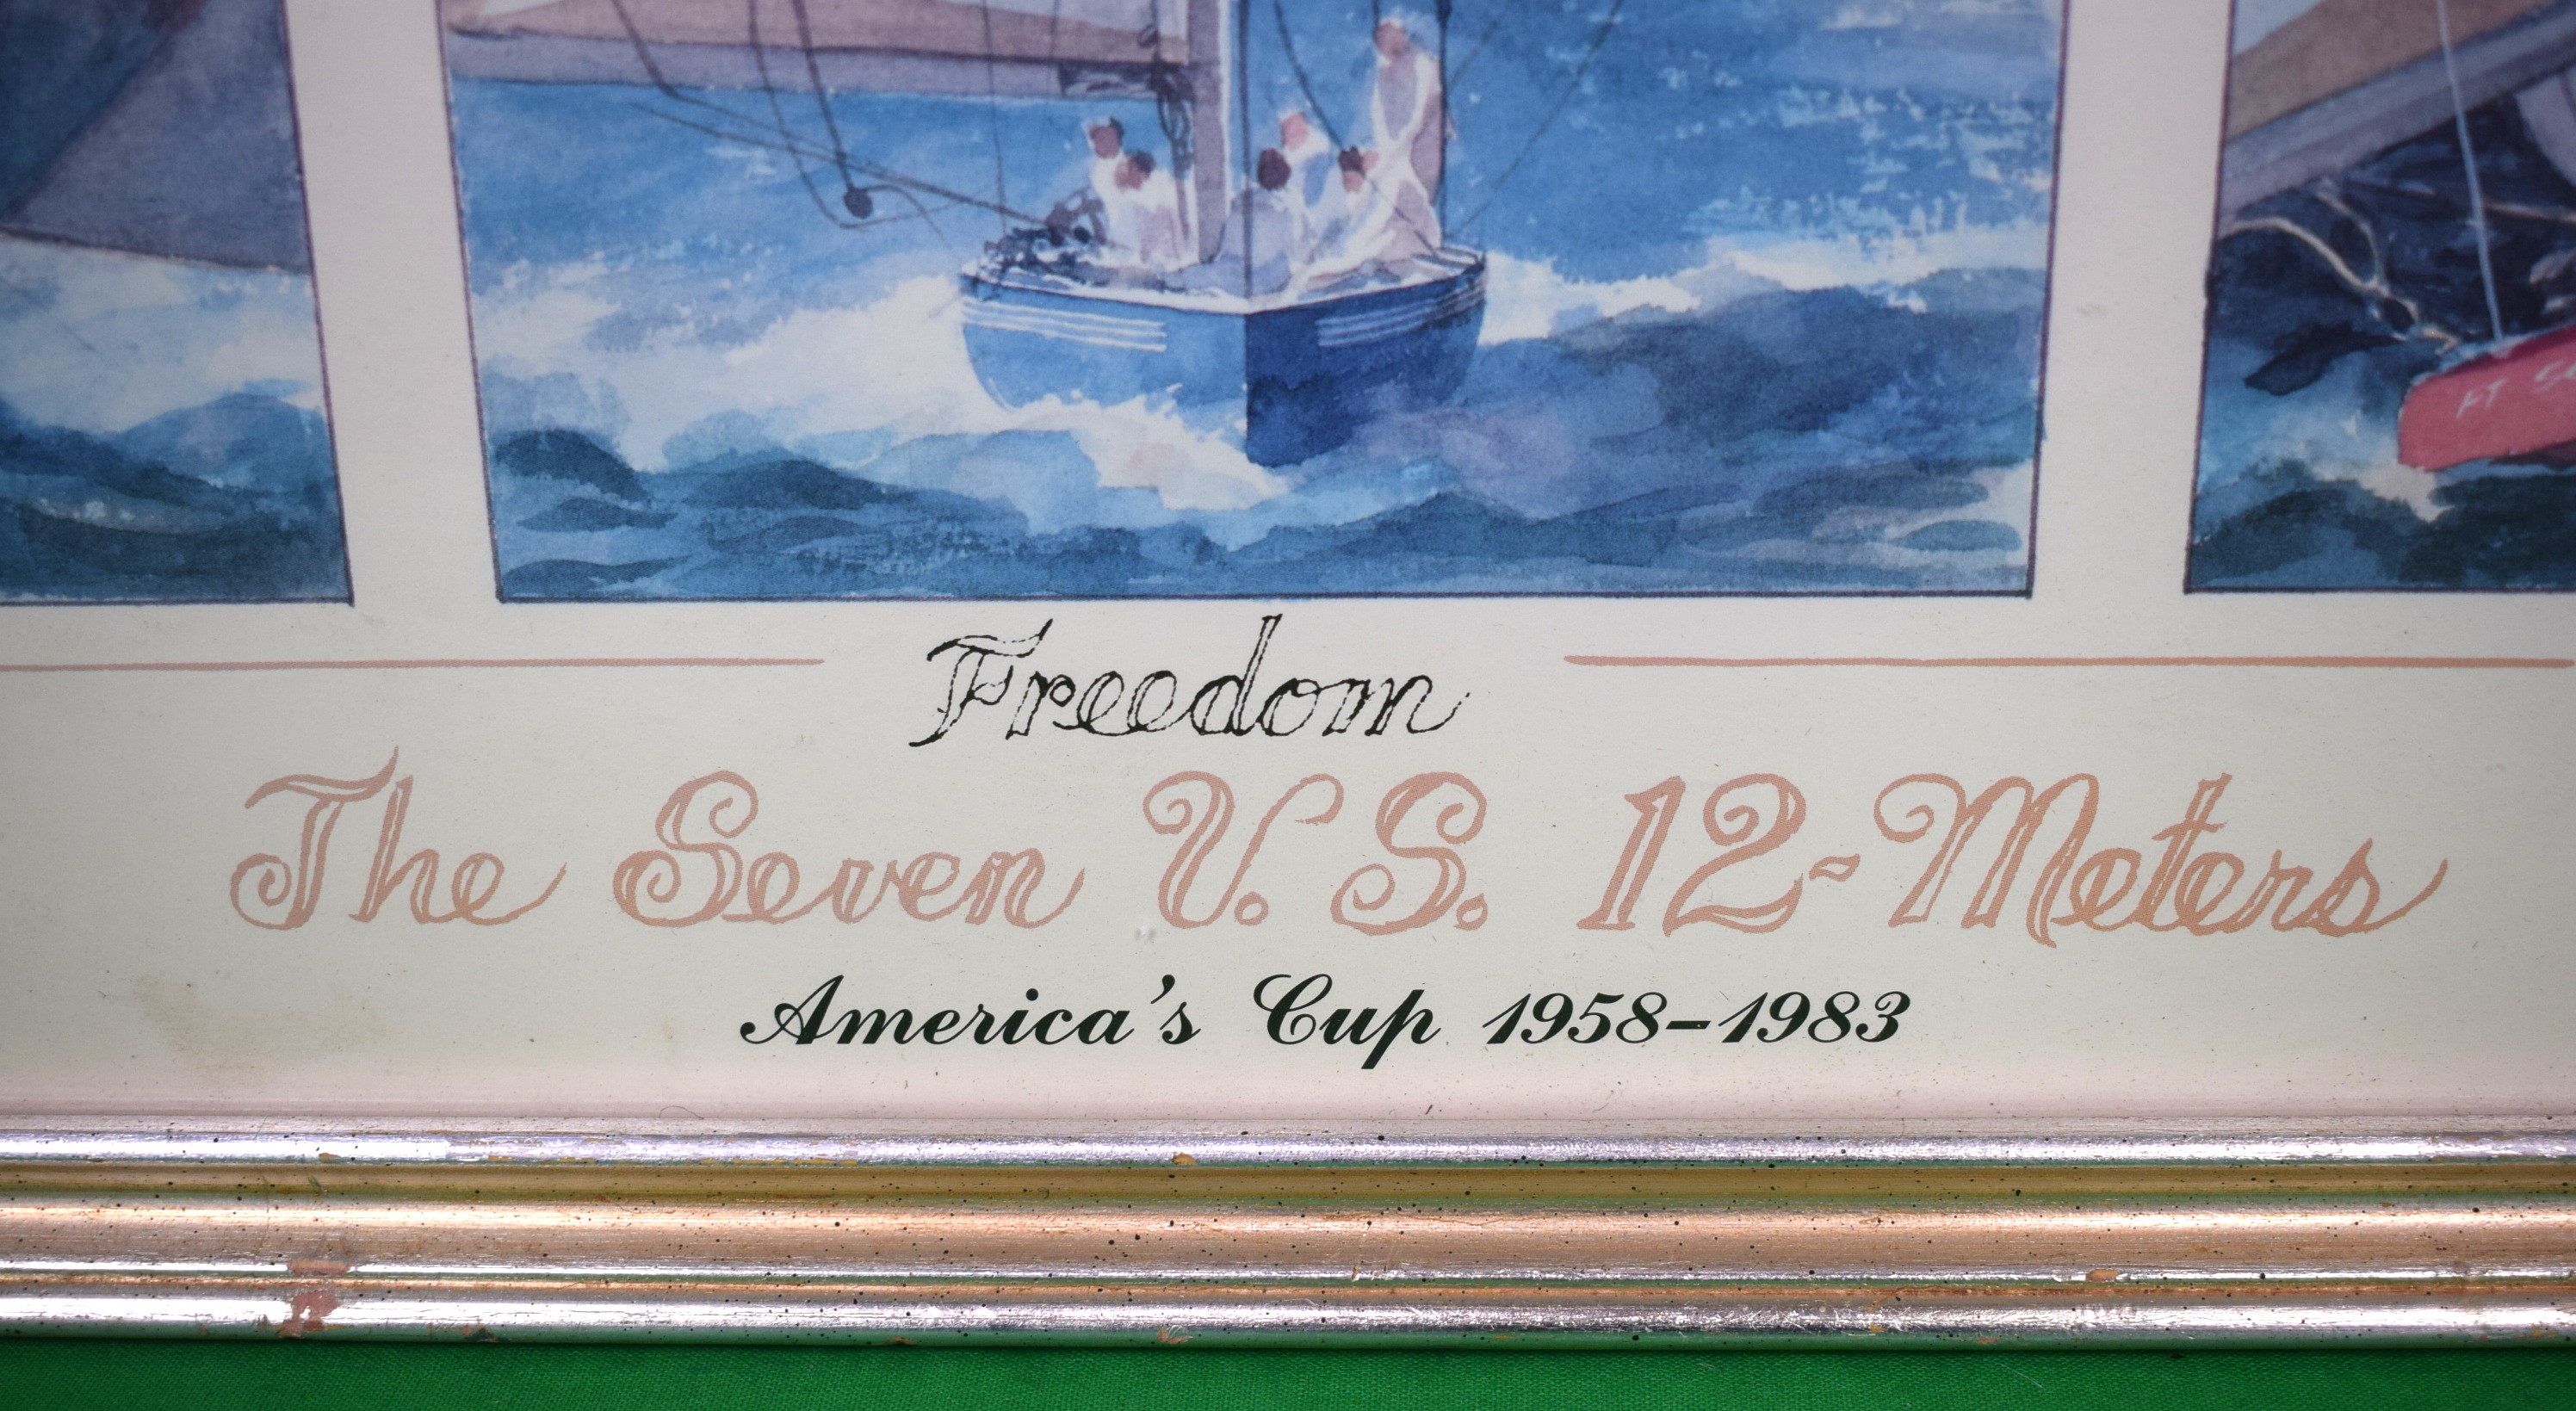 Seven US 12-Meters - America's Cup 1958-1983